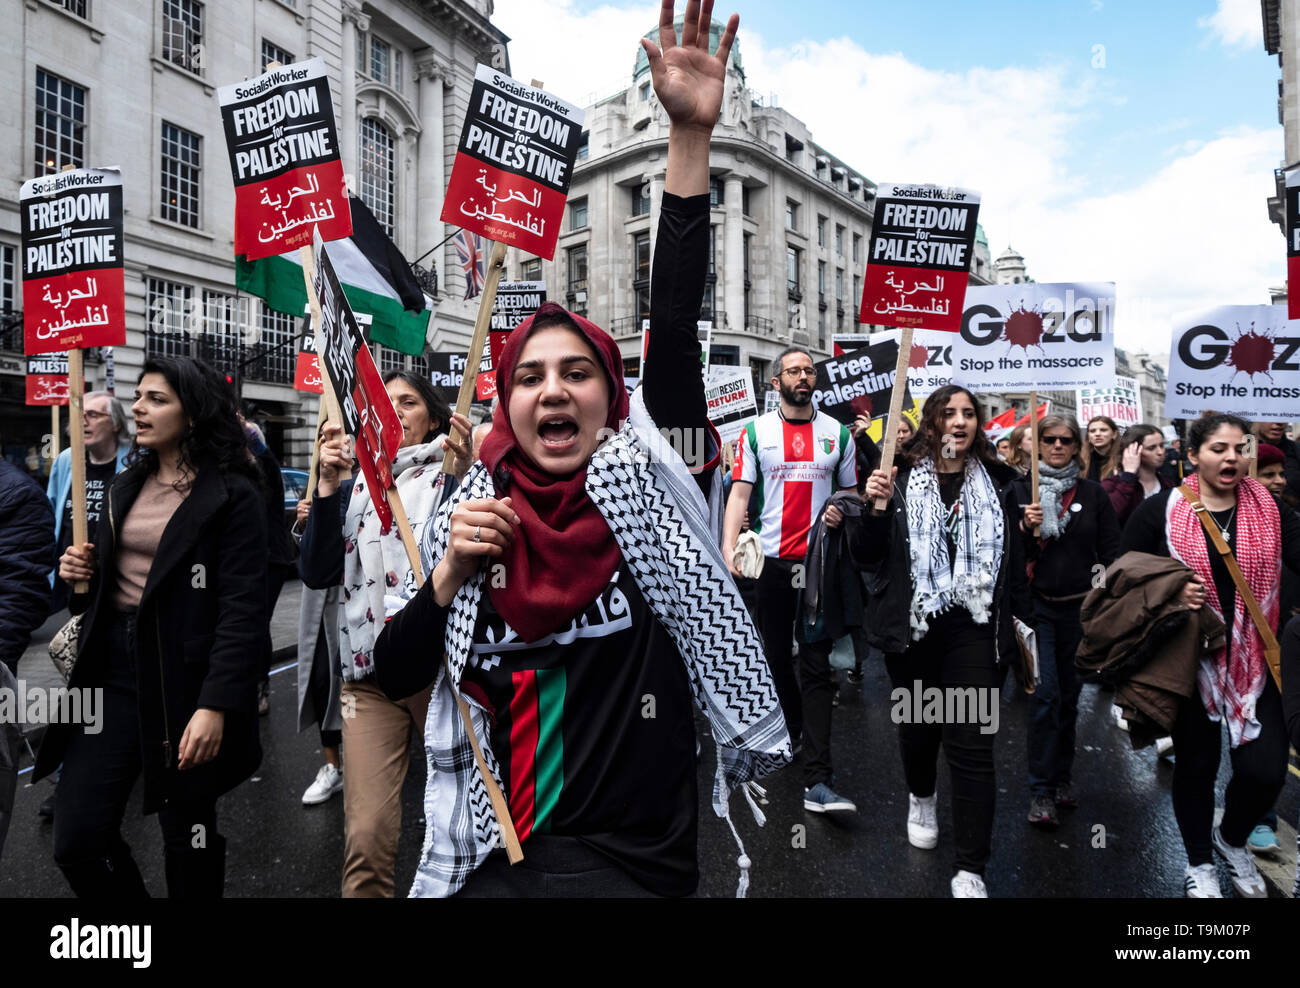 Palästinensische Demonstration und Kundgebung durch das Zentrum von London ein paar Tage vor der Nakba Tag. Der Protest wurde für ein Ende der israelischen Unterdrückung und Belagerung des Gazastreifens und Gerechtigkeit und die Anerkennung der palästinensischen Rechte einschließlich des Rechts auf Rückkehr. Sie bat die Leute zum Boykott Israels und Senden Spenden für medizinische Hilfe für Palästina. London, 11. Mai 2019 Stockfoto